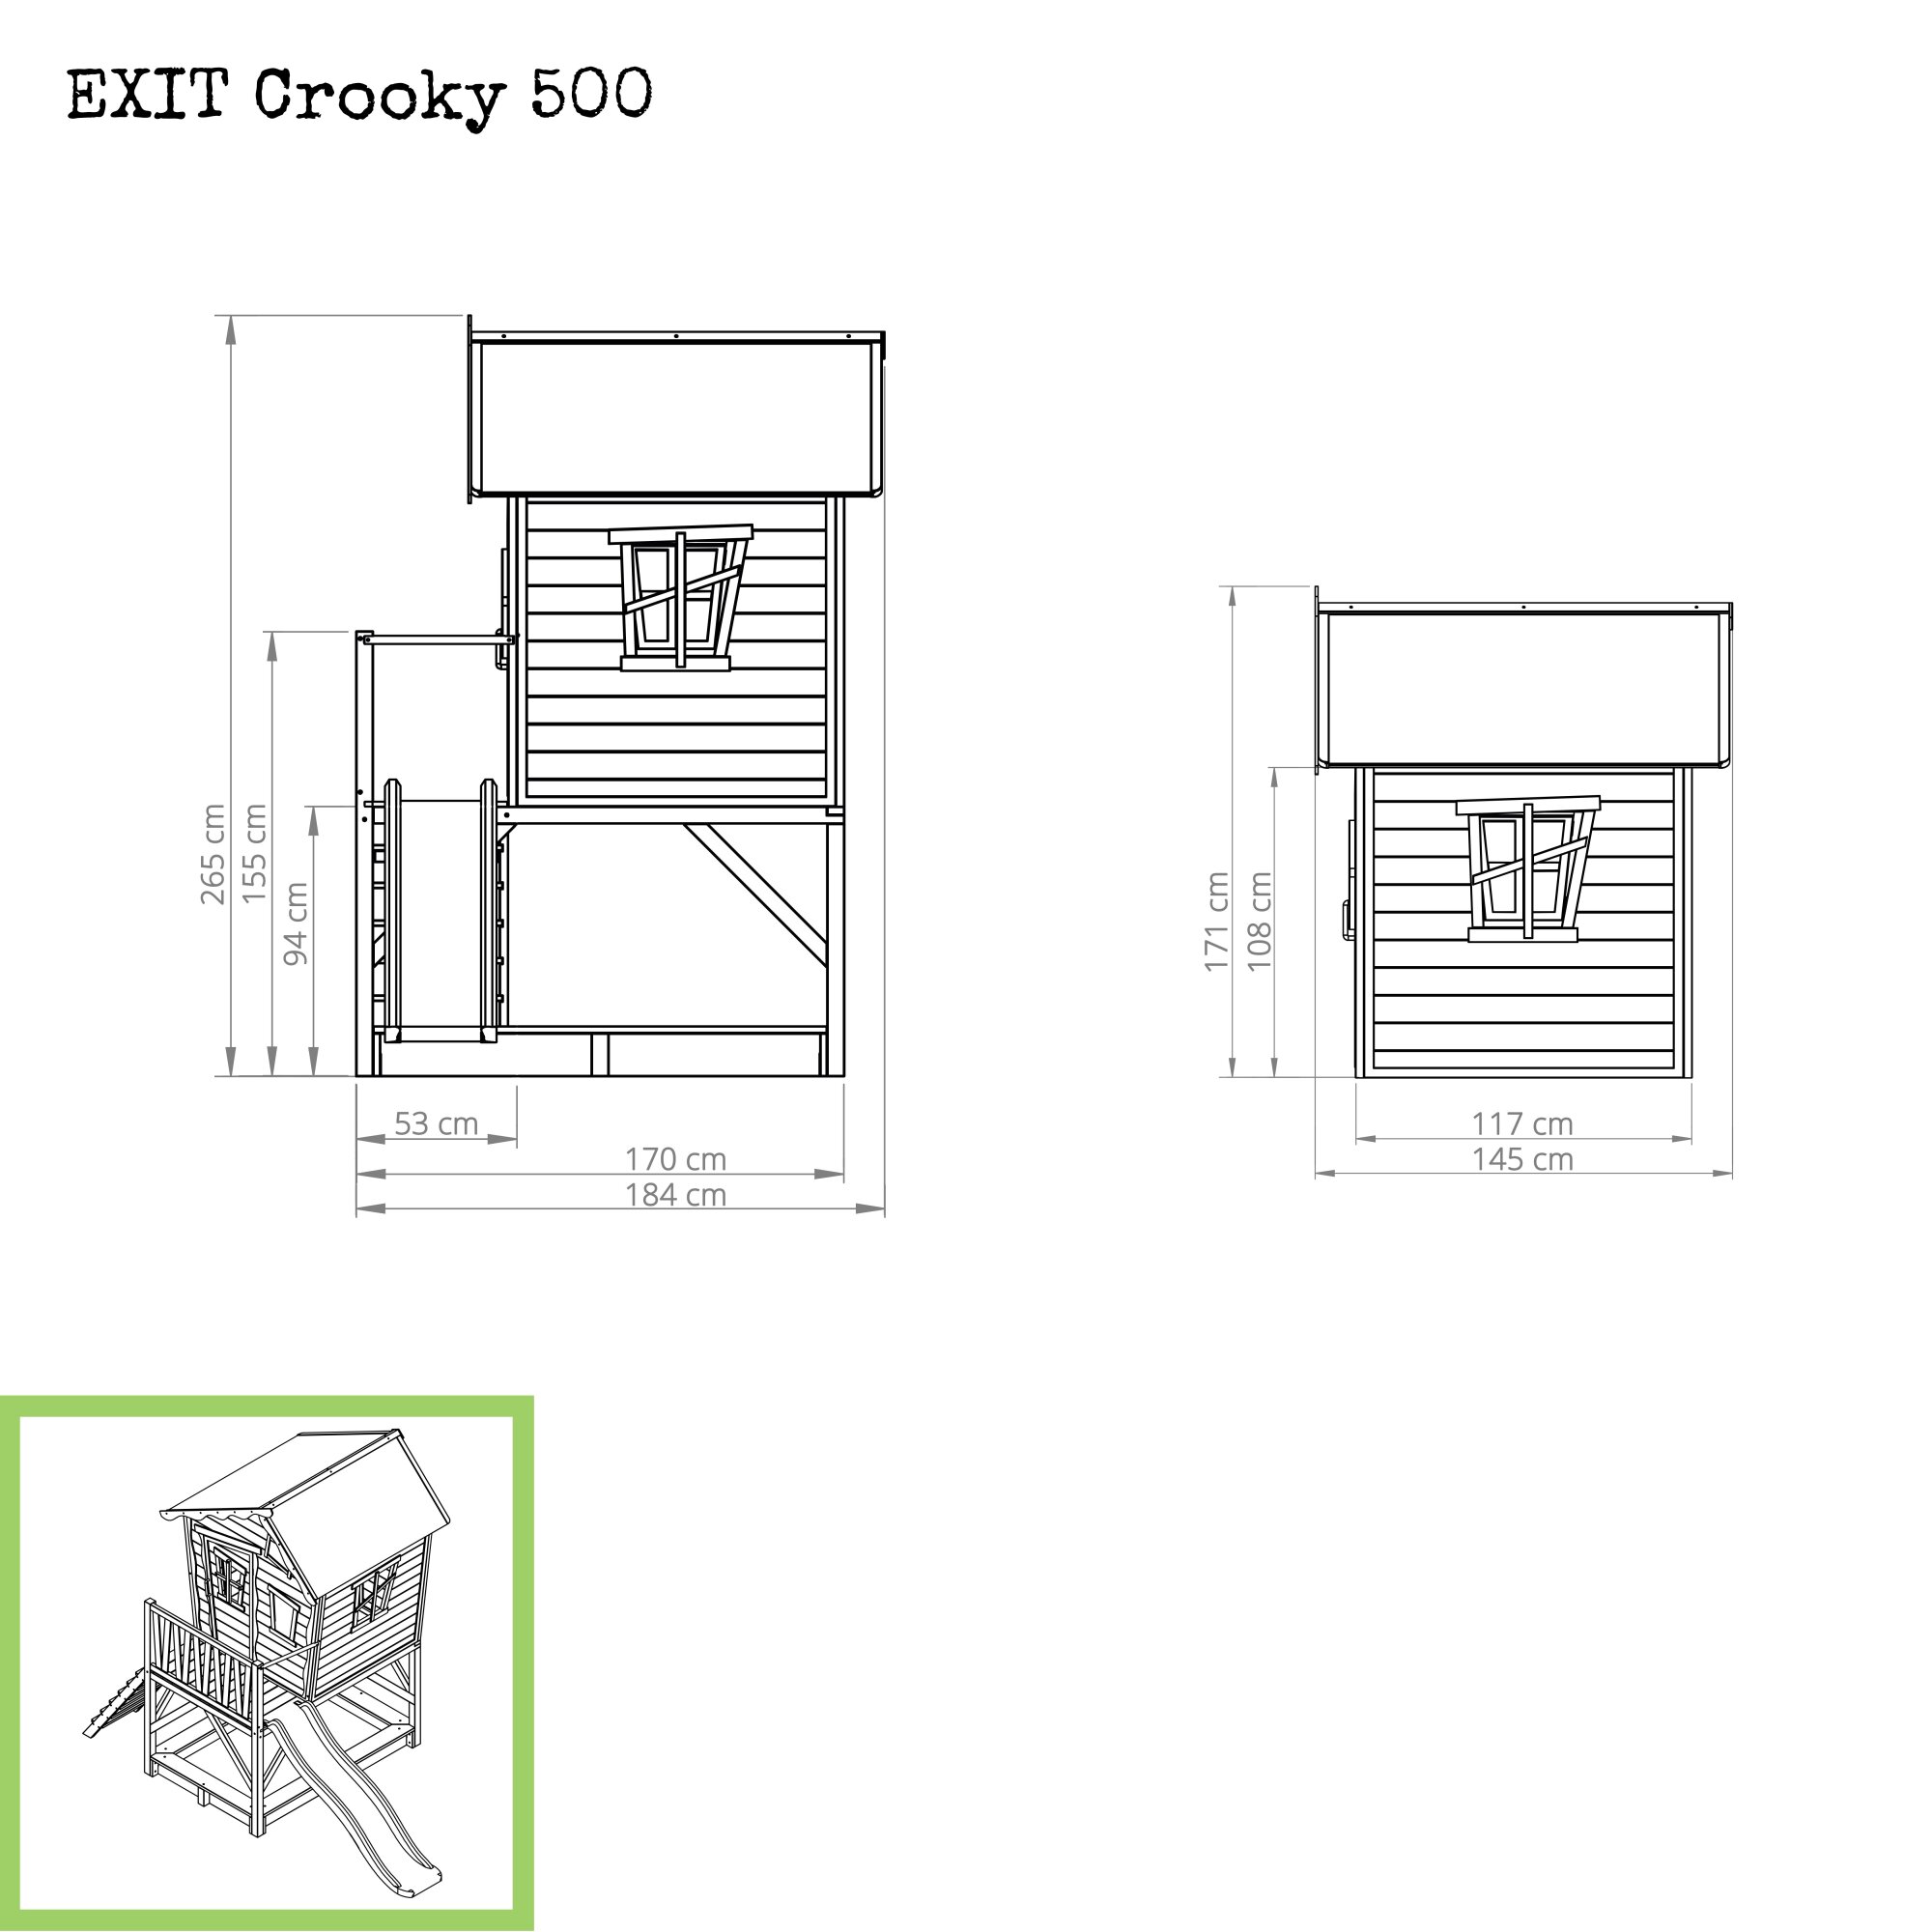 EXIT Crooky 500 Holzspielhaus graubeige Maße